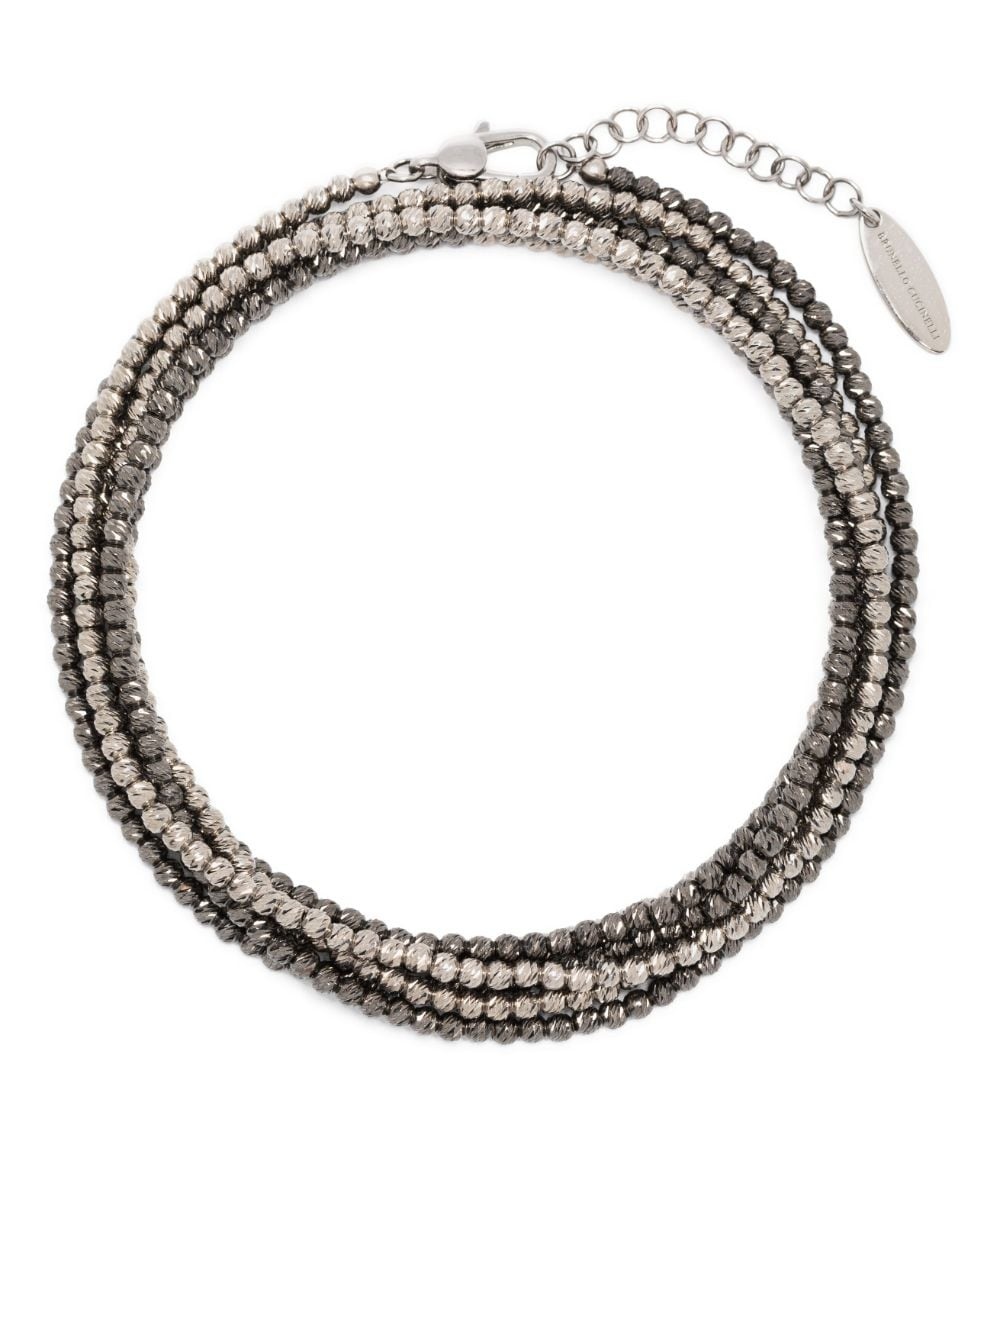 bead-embellished bracelet set - 1